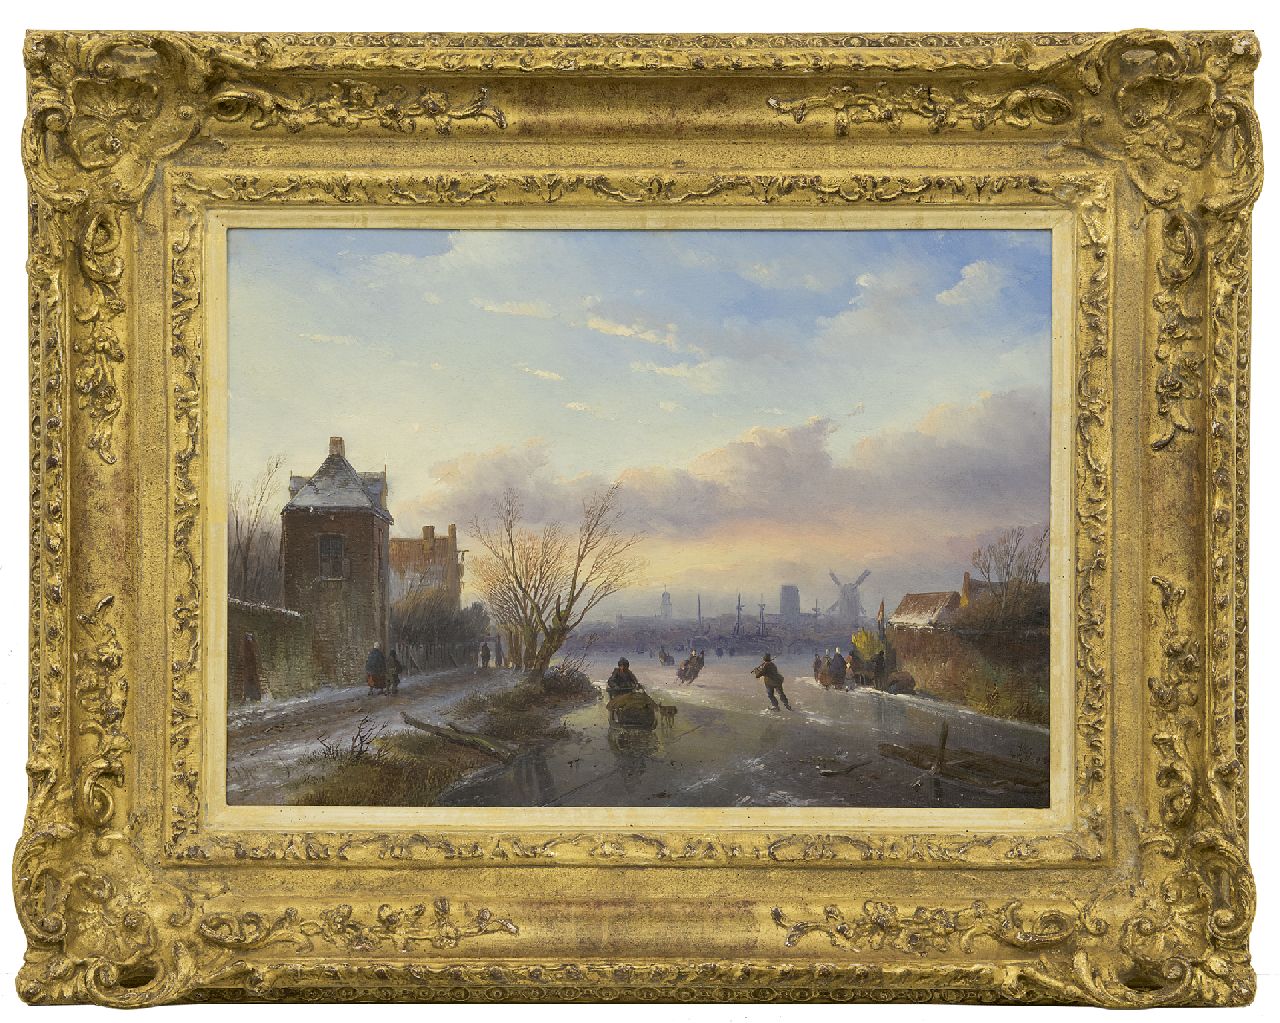 Spohler J.J.  | Jan Jacob Spohler, Schaatsers op een bevroren rivier bij een stad, olieverf op paneel 30,5 x 43,0 cm, gesigneerd linksonder